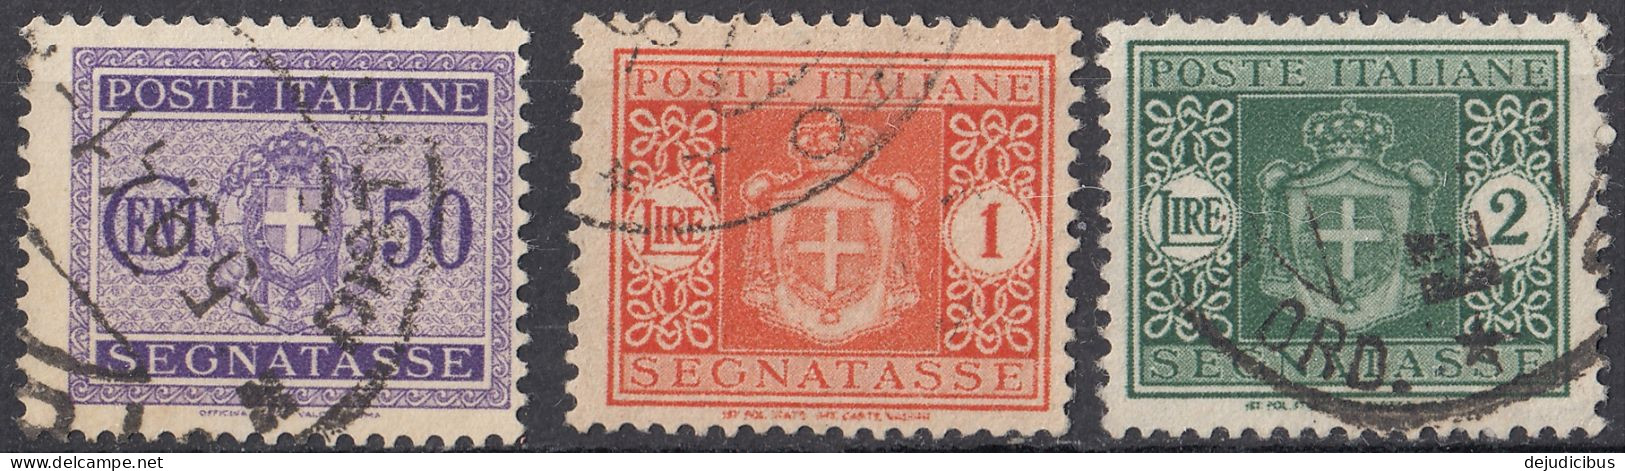 ITALIA - 1934 - Segnatasse -  Lotto Di 3 Valori Usati: Yvert  34, 36 E 37. - Portomarken